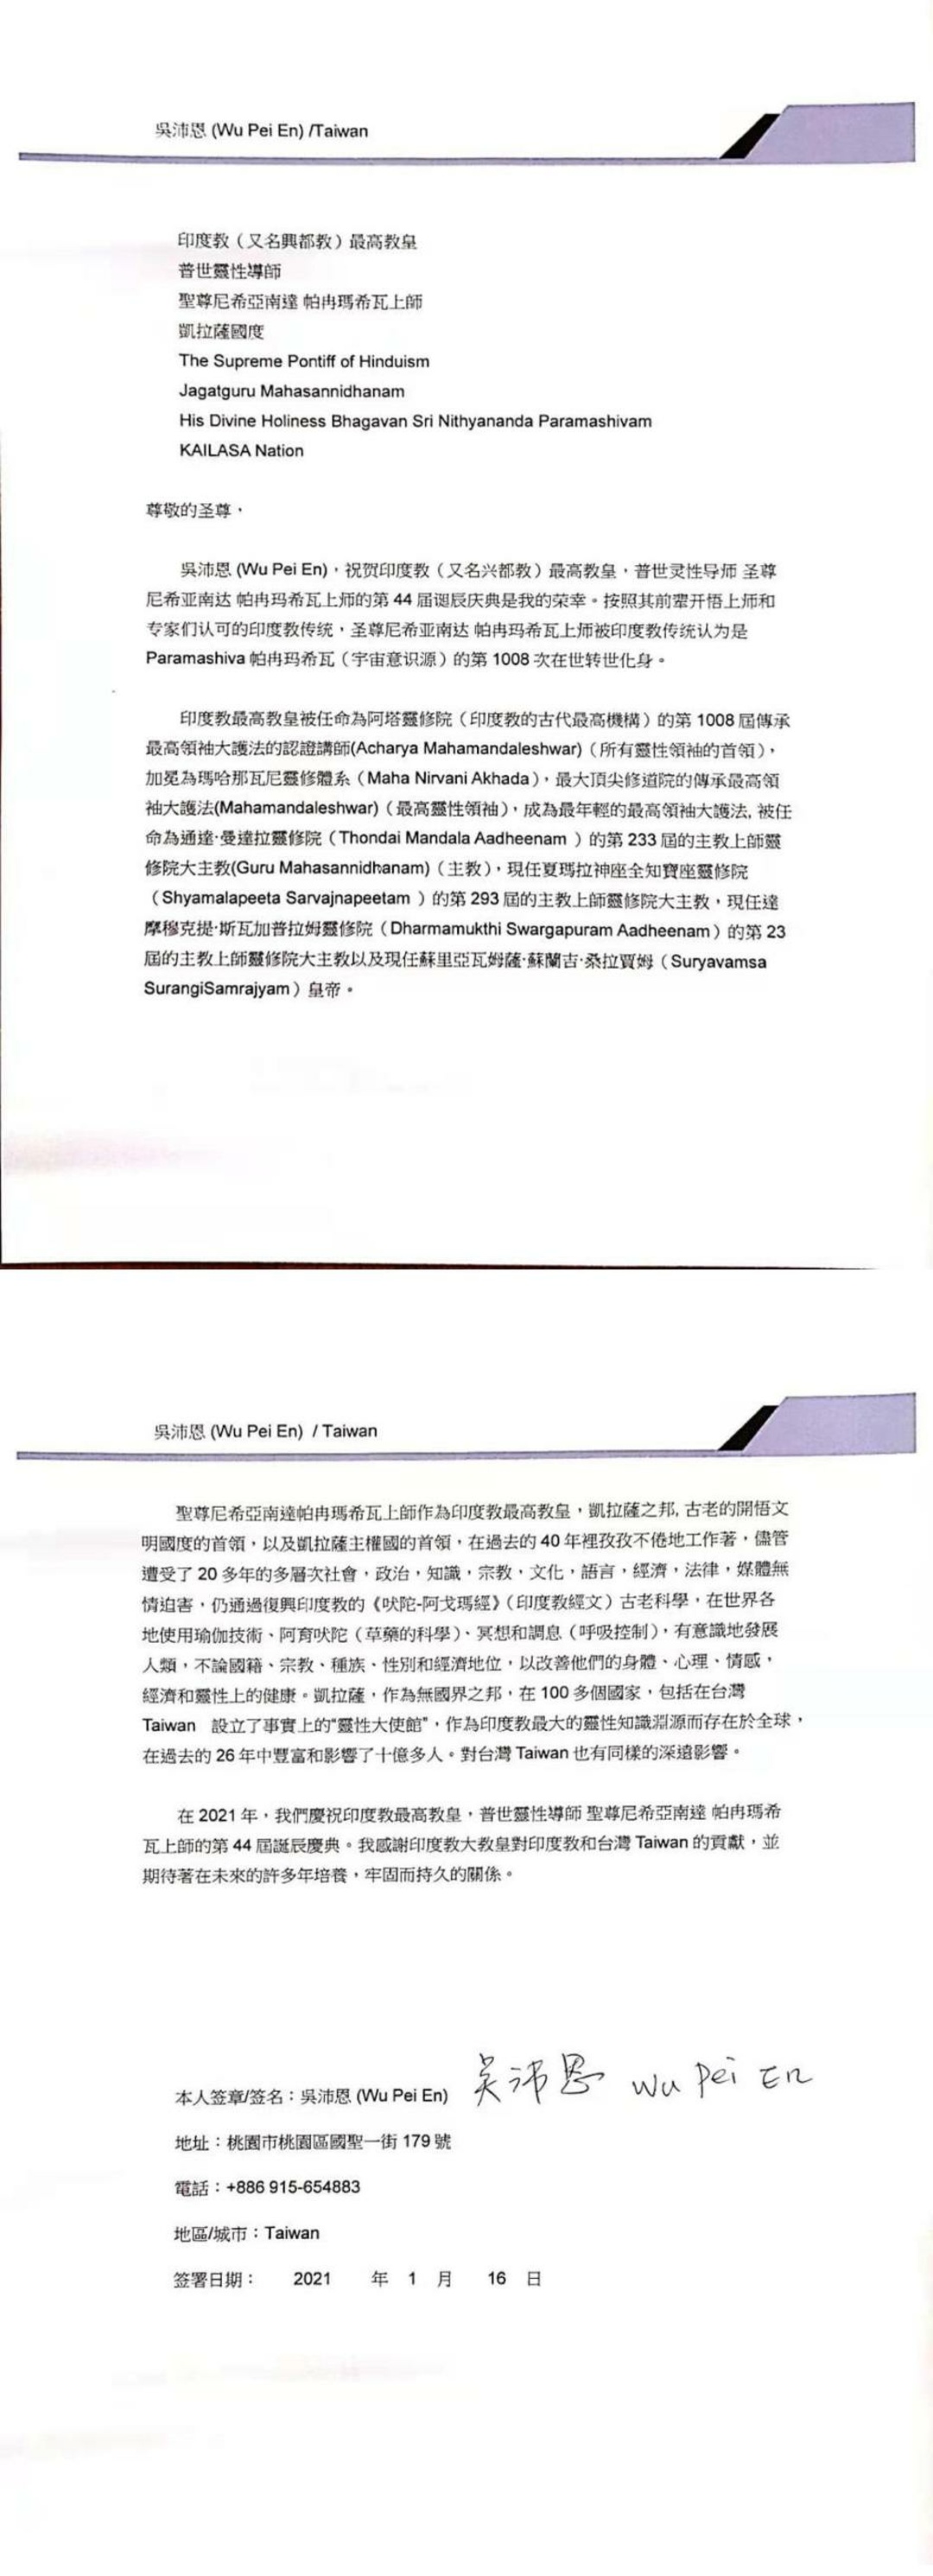 Taiwan---Peien-Wu---January-16--2021-(Proclamation)-1sbkaNjVH4hxkM34bq0Xj9Ijsqq8SF3Tx.pdf